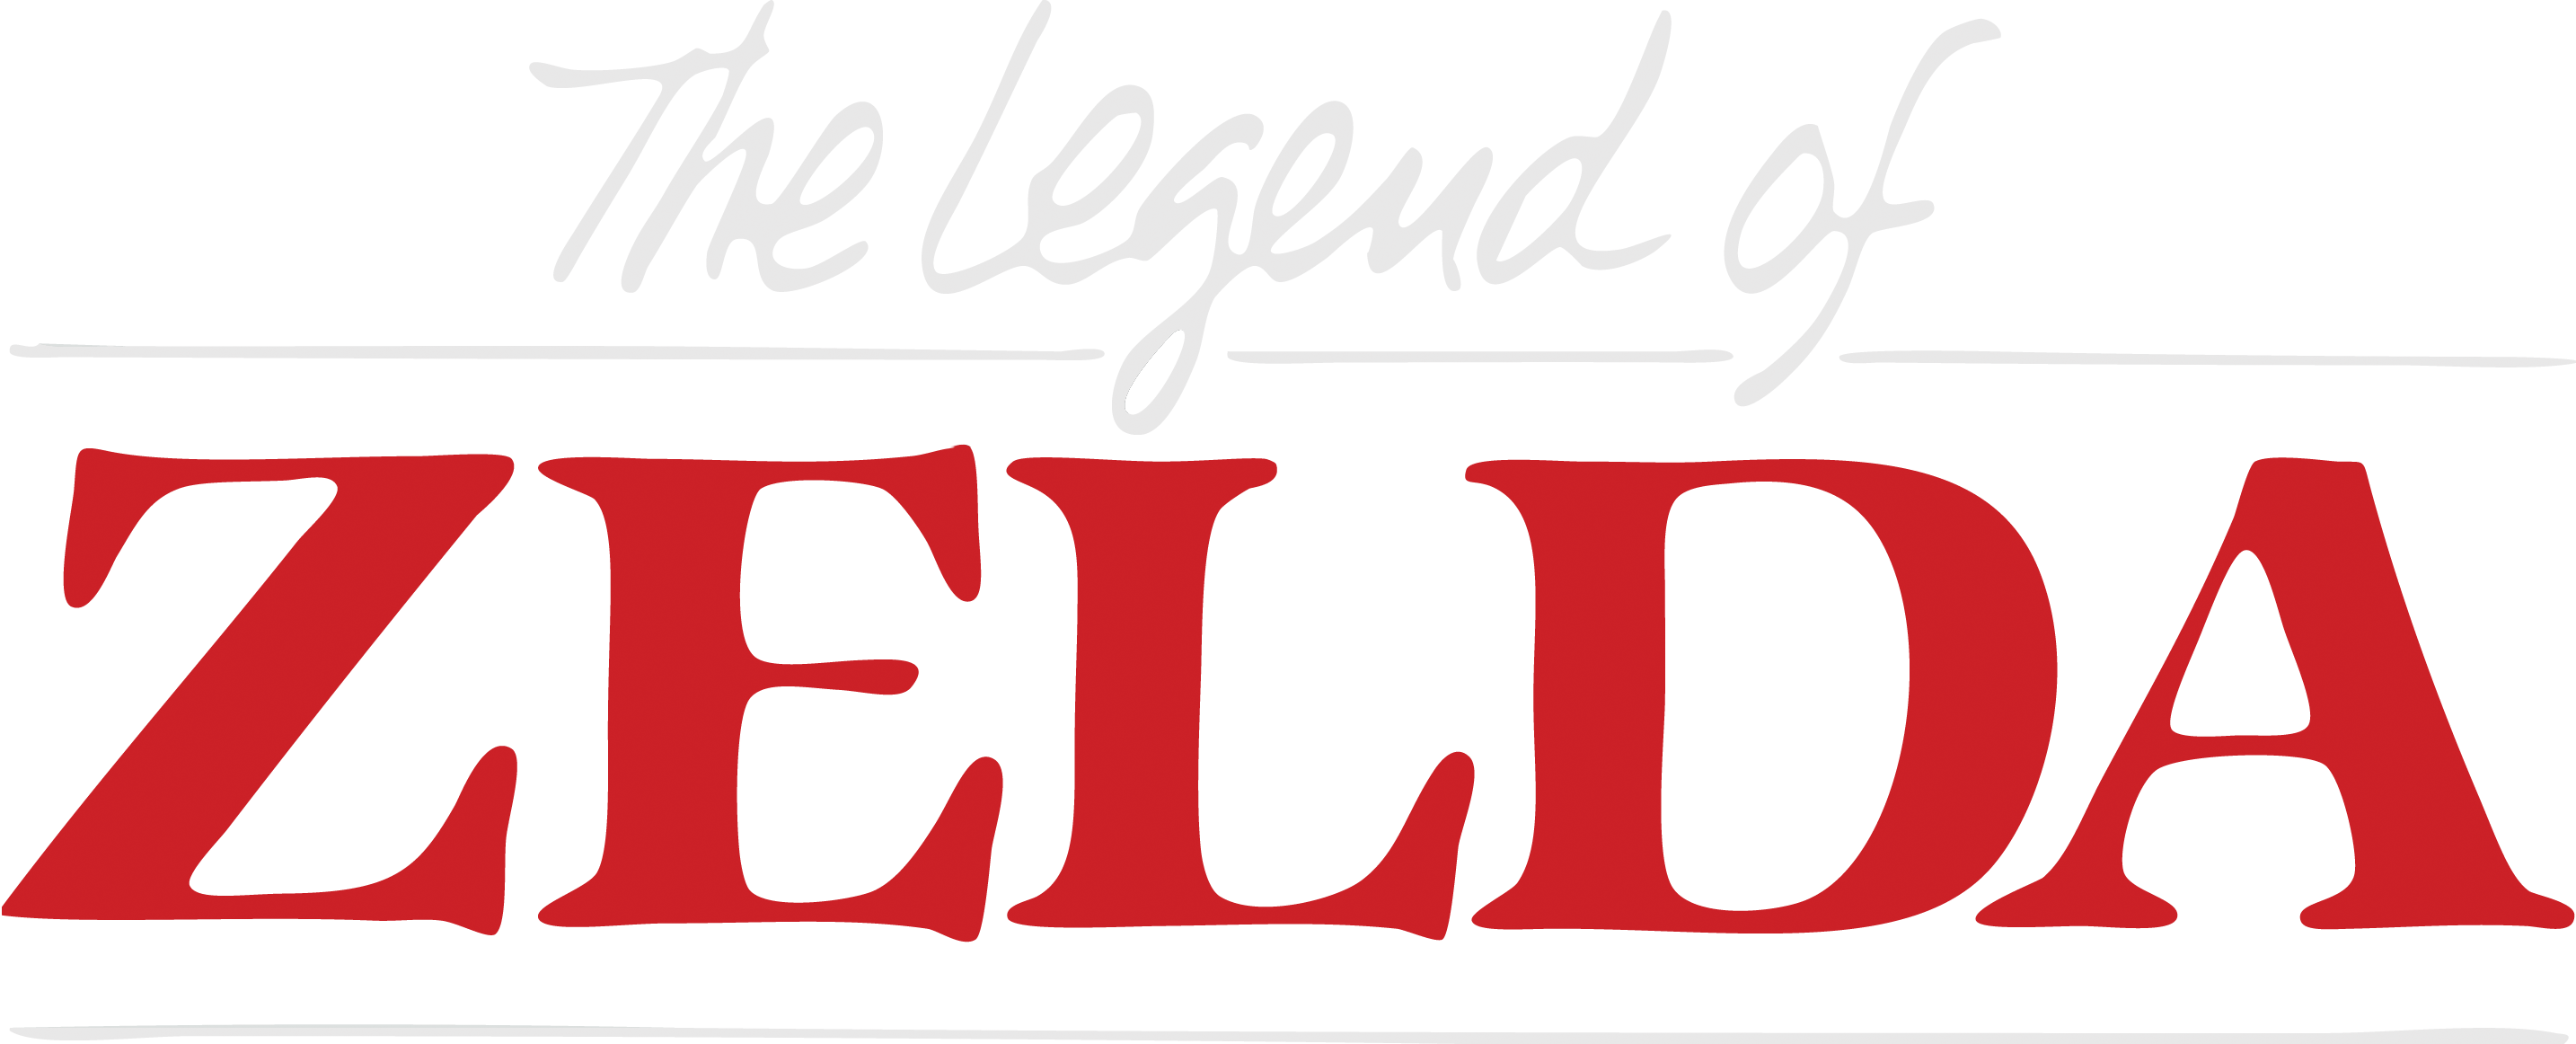 Download PNG image - The Legend of Zelda Logo PNG Transparent 